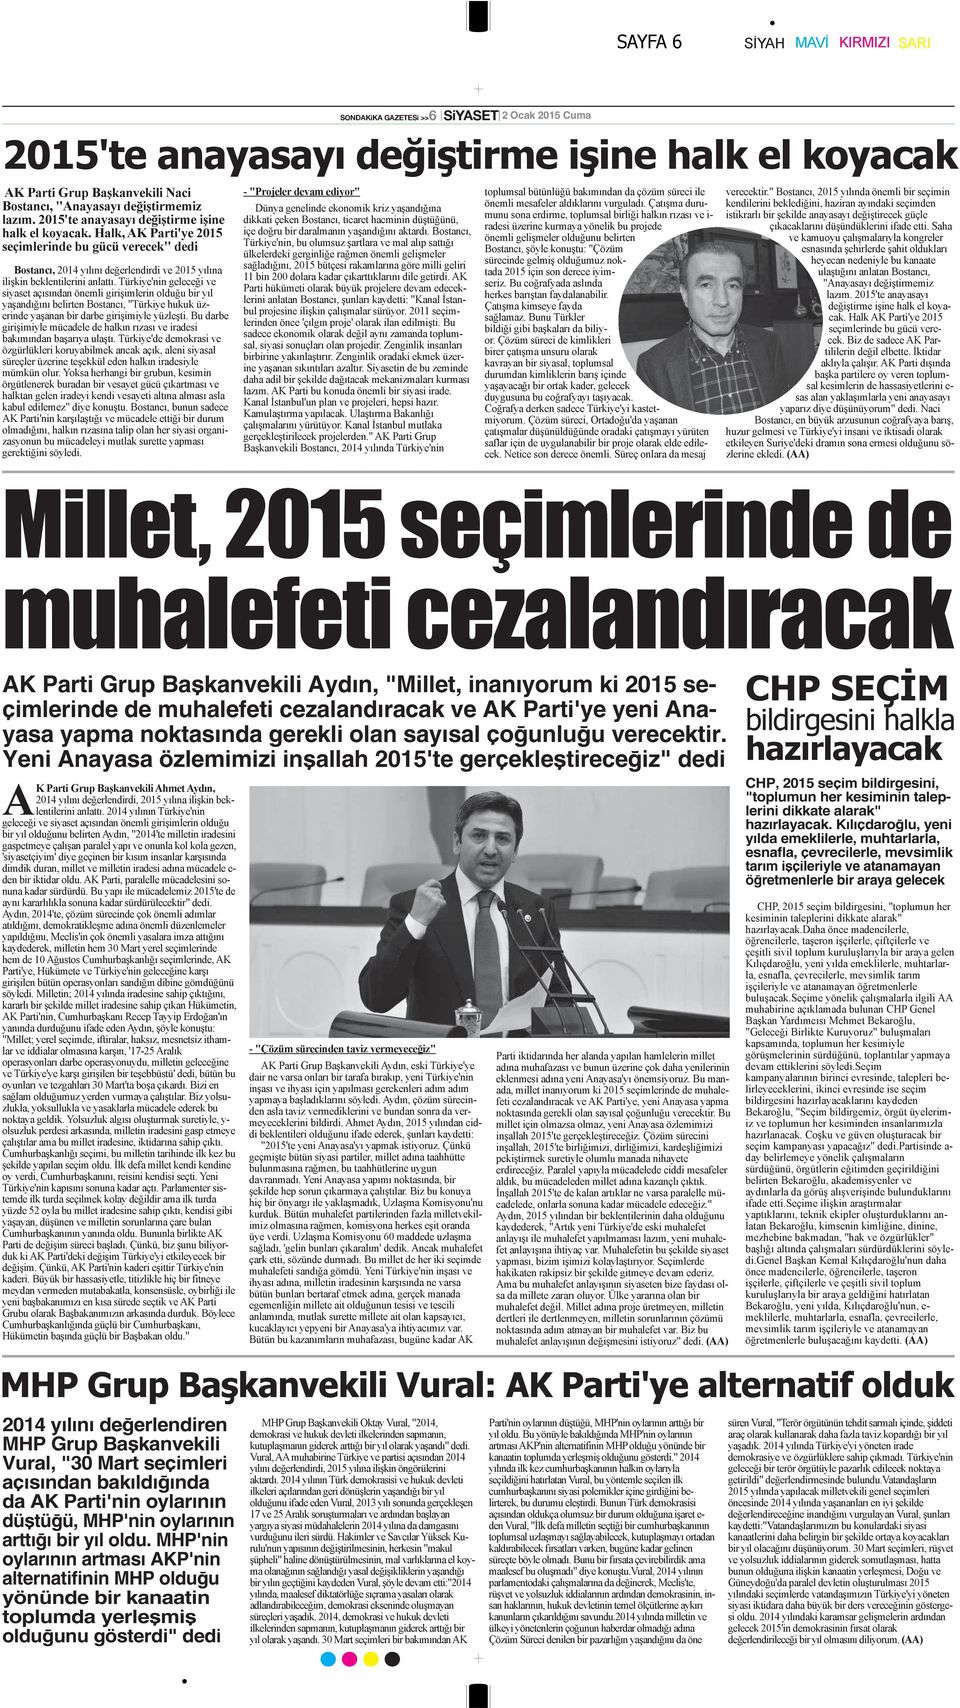 Kılıçdaroğlu, yeni yılda emeklilerle, muhtarlarla, esnafla, çevrecilerle, mevsimlik tarım işçileriyle ve atanamayan öğretmenlerle bir araya gelecek 2014 yılını değerlendiren MHP Grup Başkanvekili